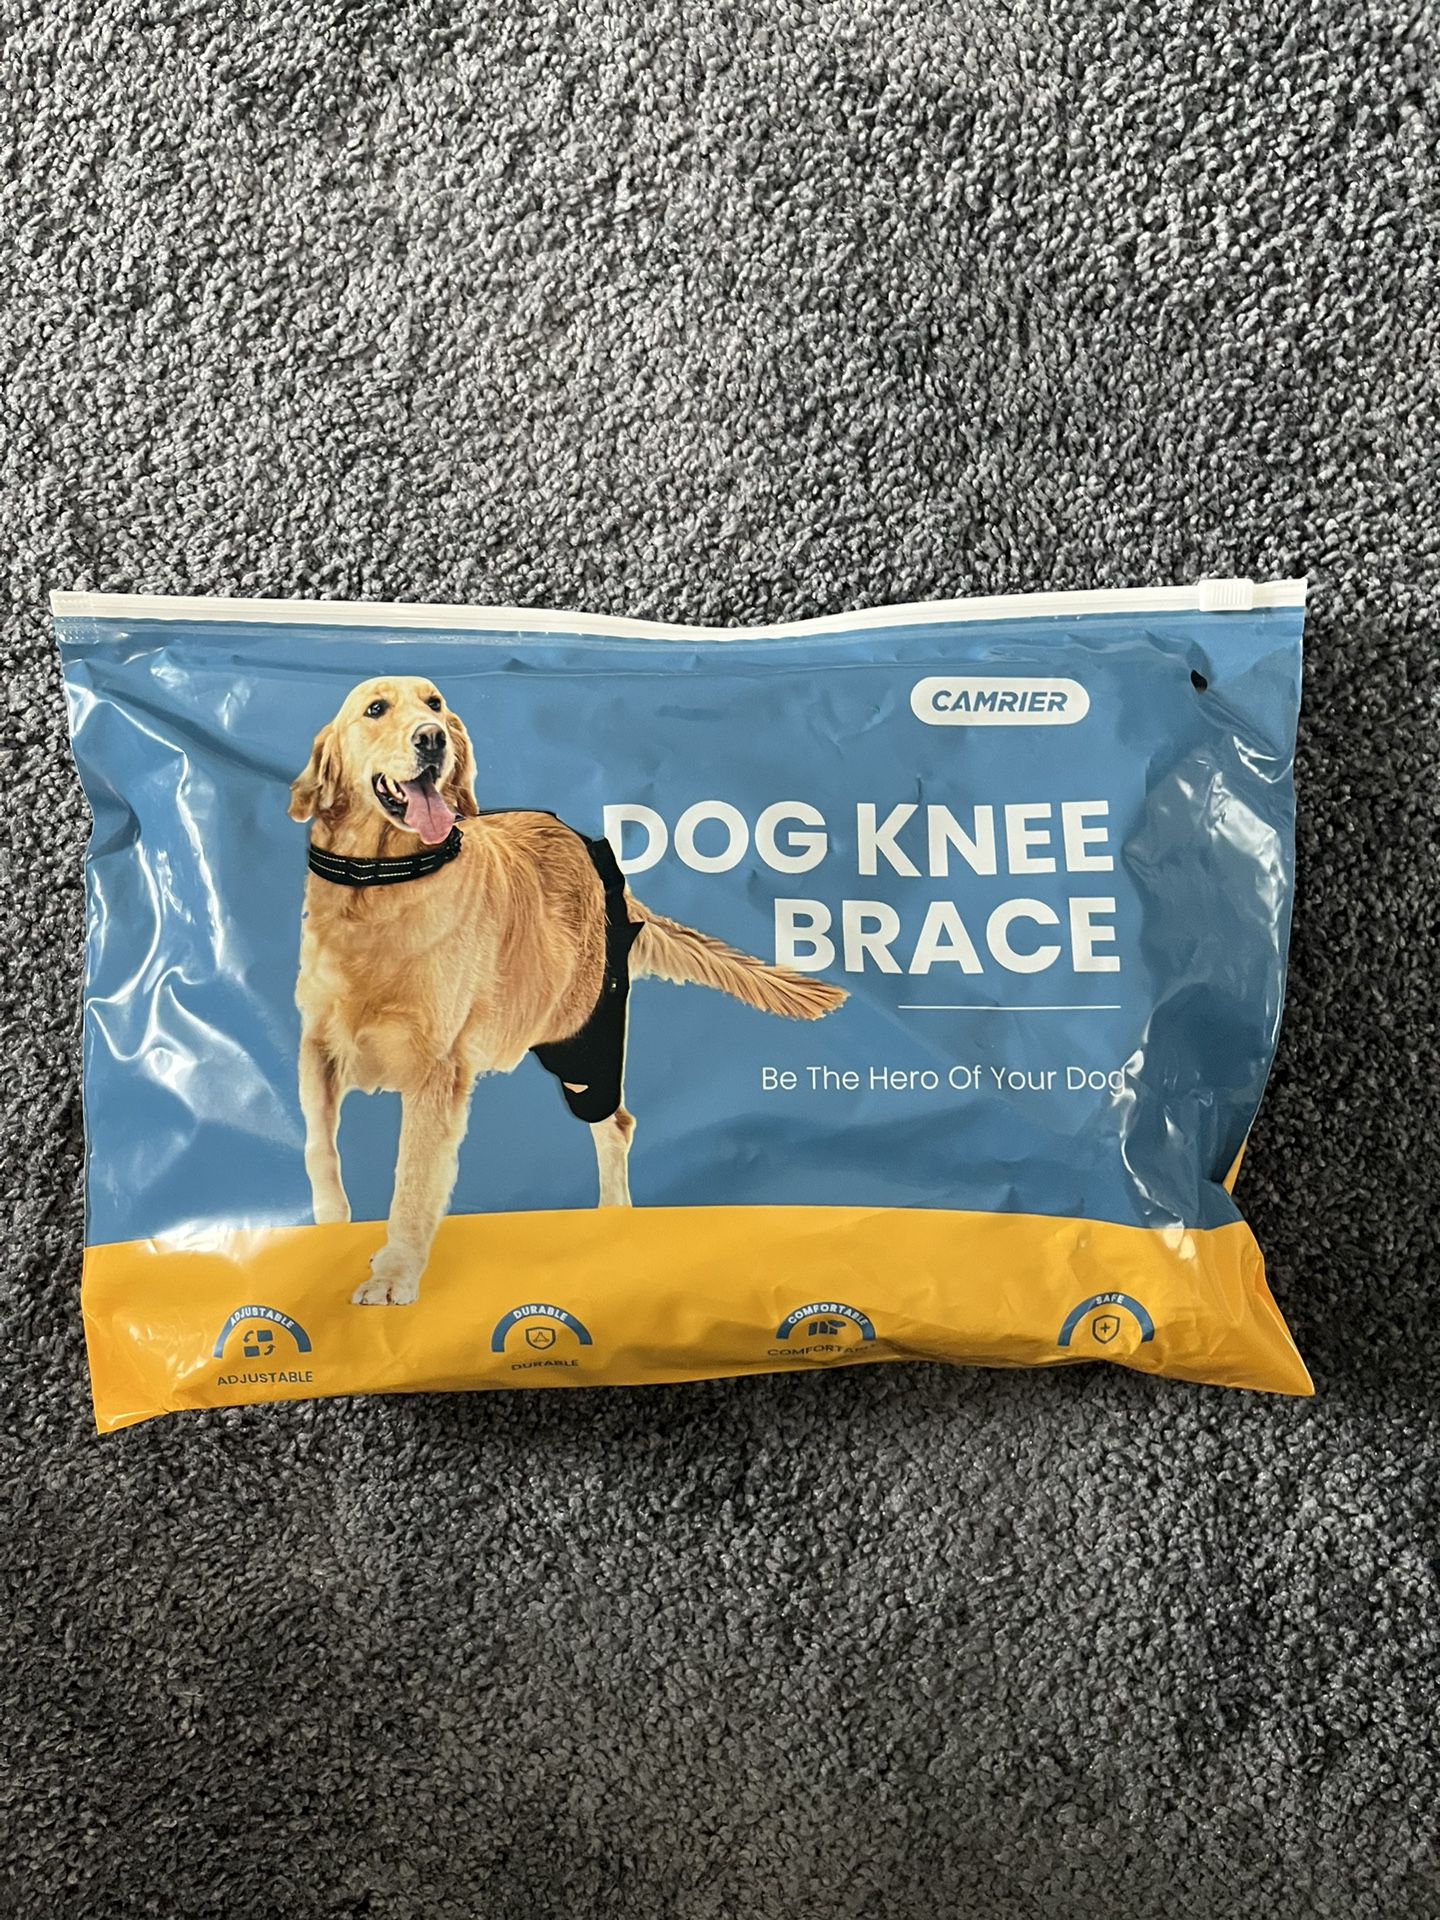 Dog Brace Brand New 